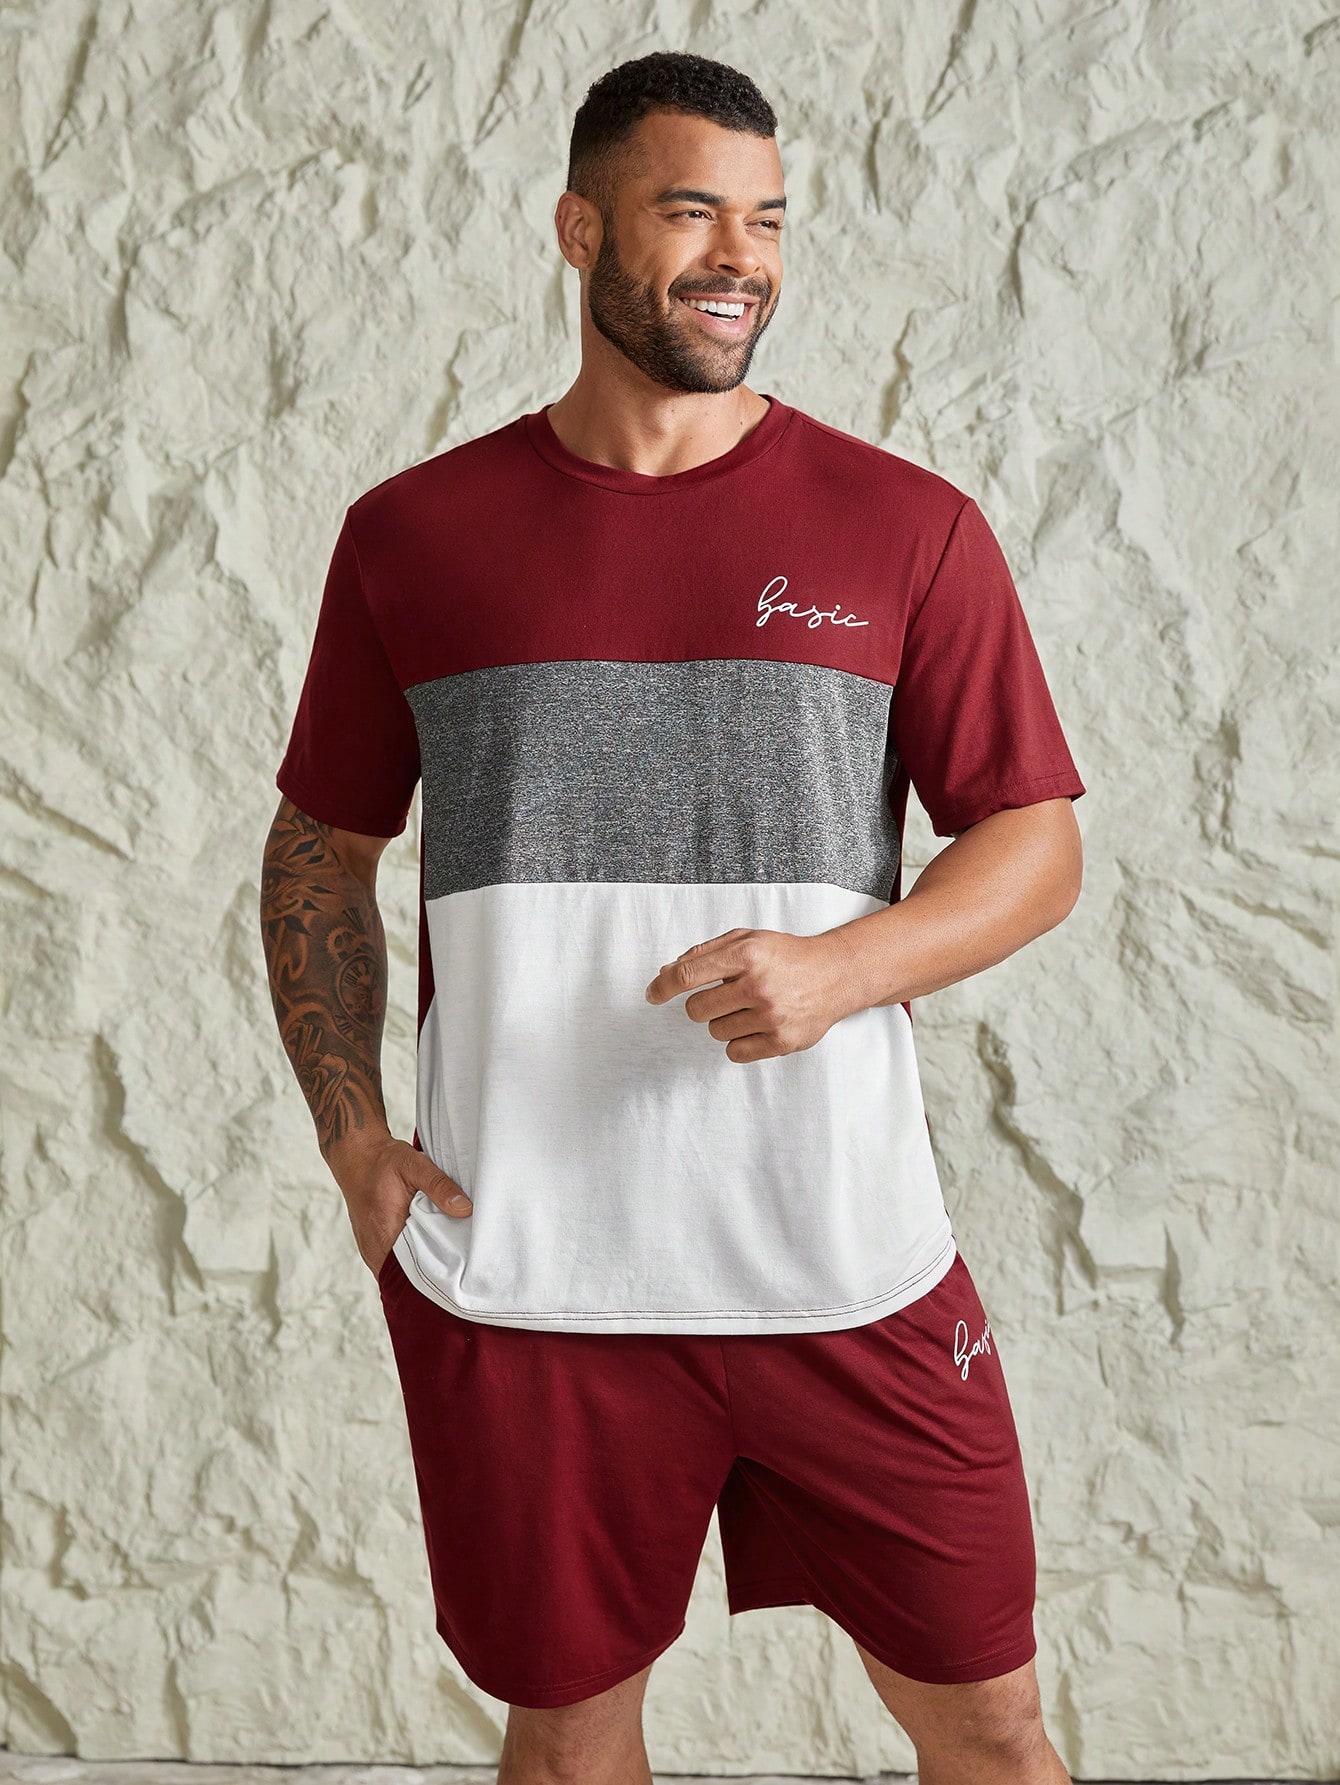 Manfinity Homme Мужская футболка и шорты контрастного цвета с буквенным принтом больших размеров, красный